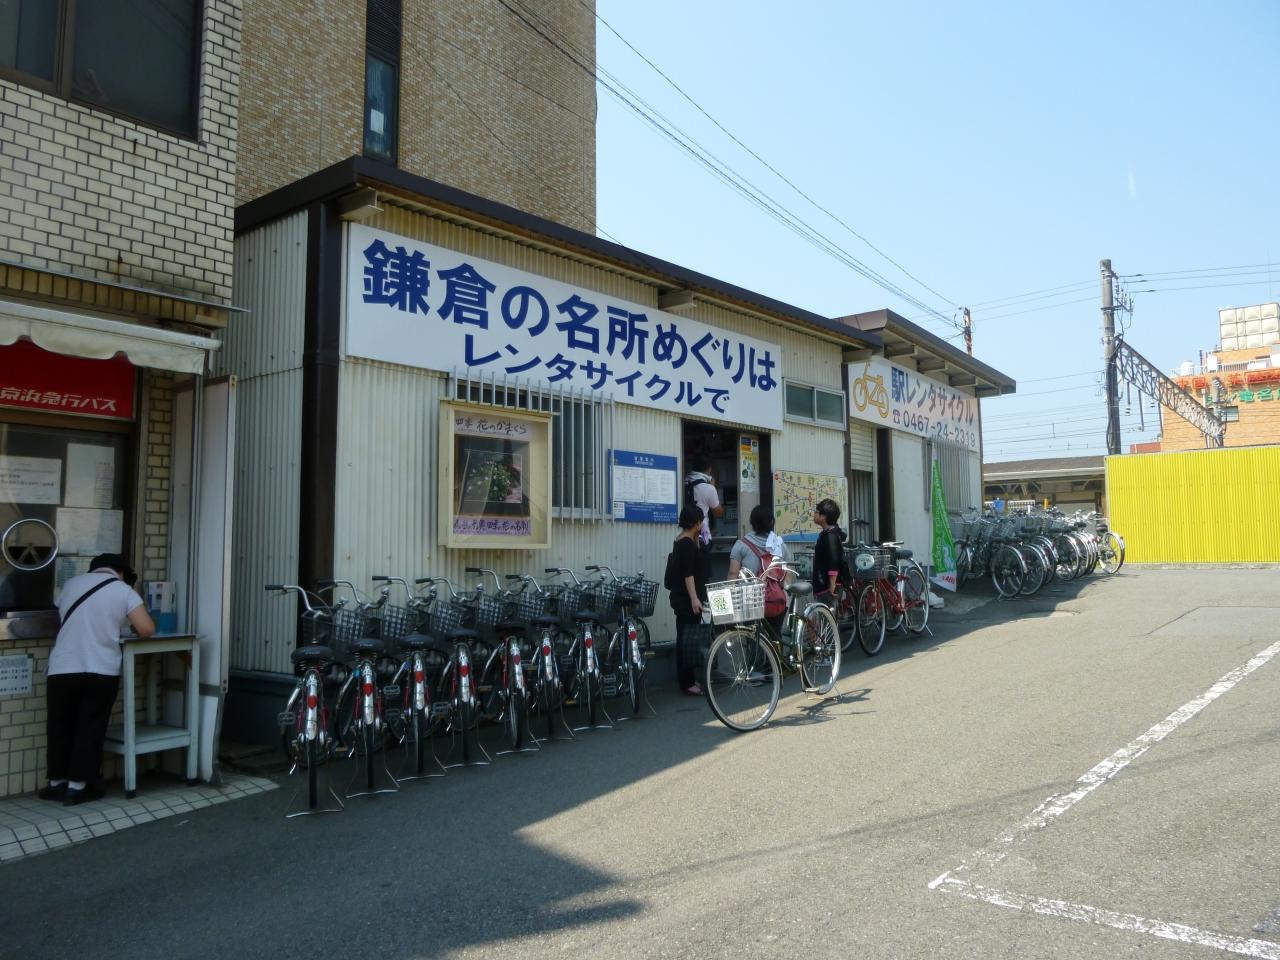 レンタサイクル 鎌倉 鎌倉のレンタサイクル(自転車レンタル)情報